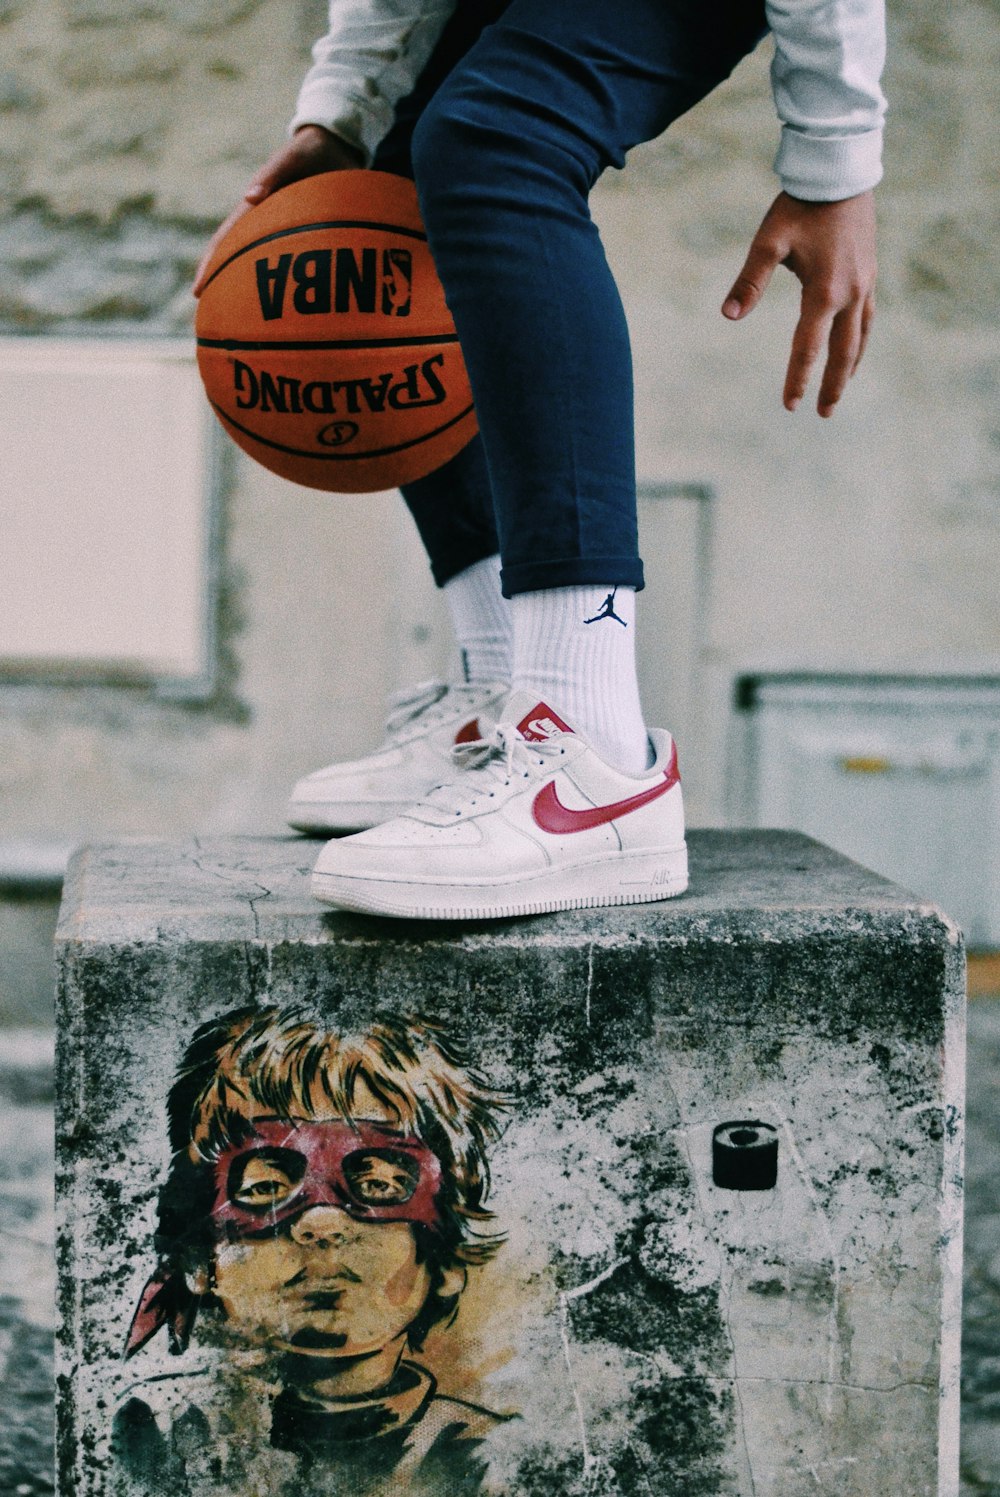 uma pessoa com uma bola de basquete sentada em cima de um bloco de cimento